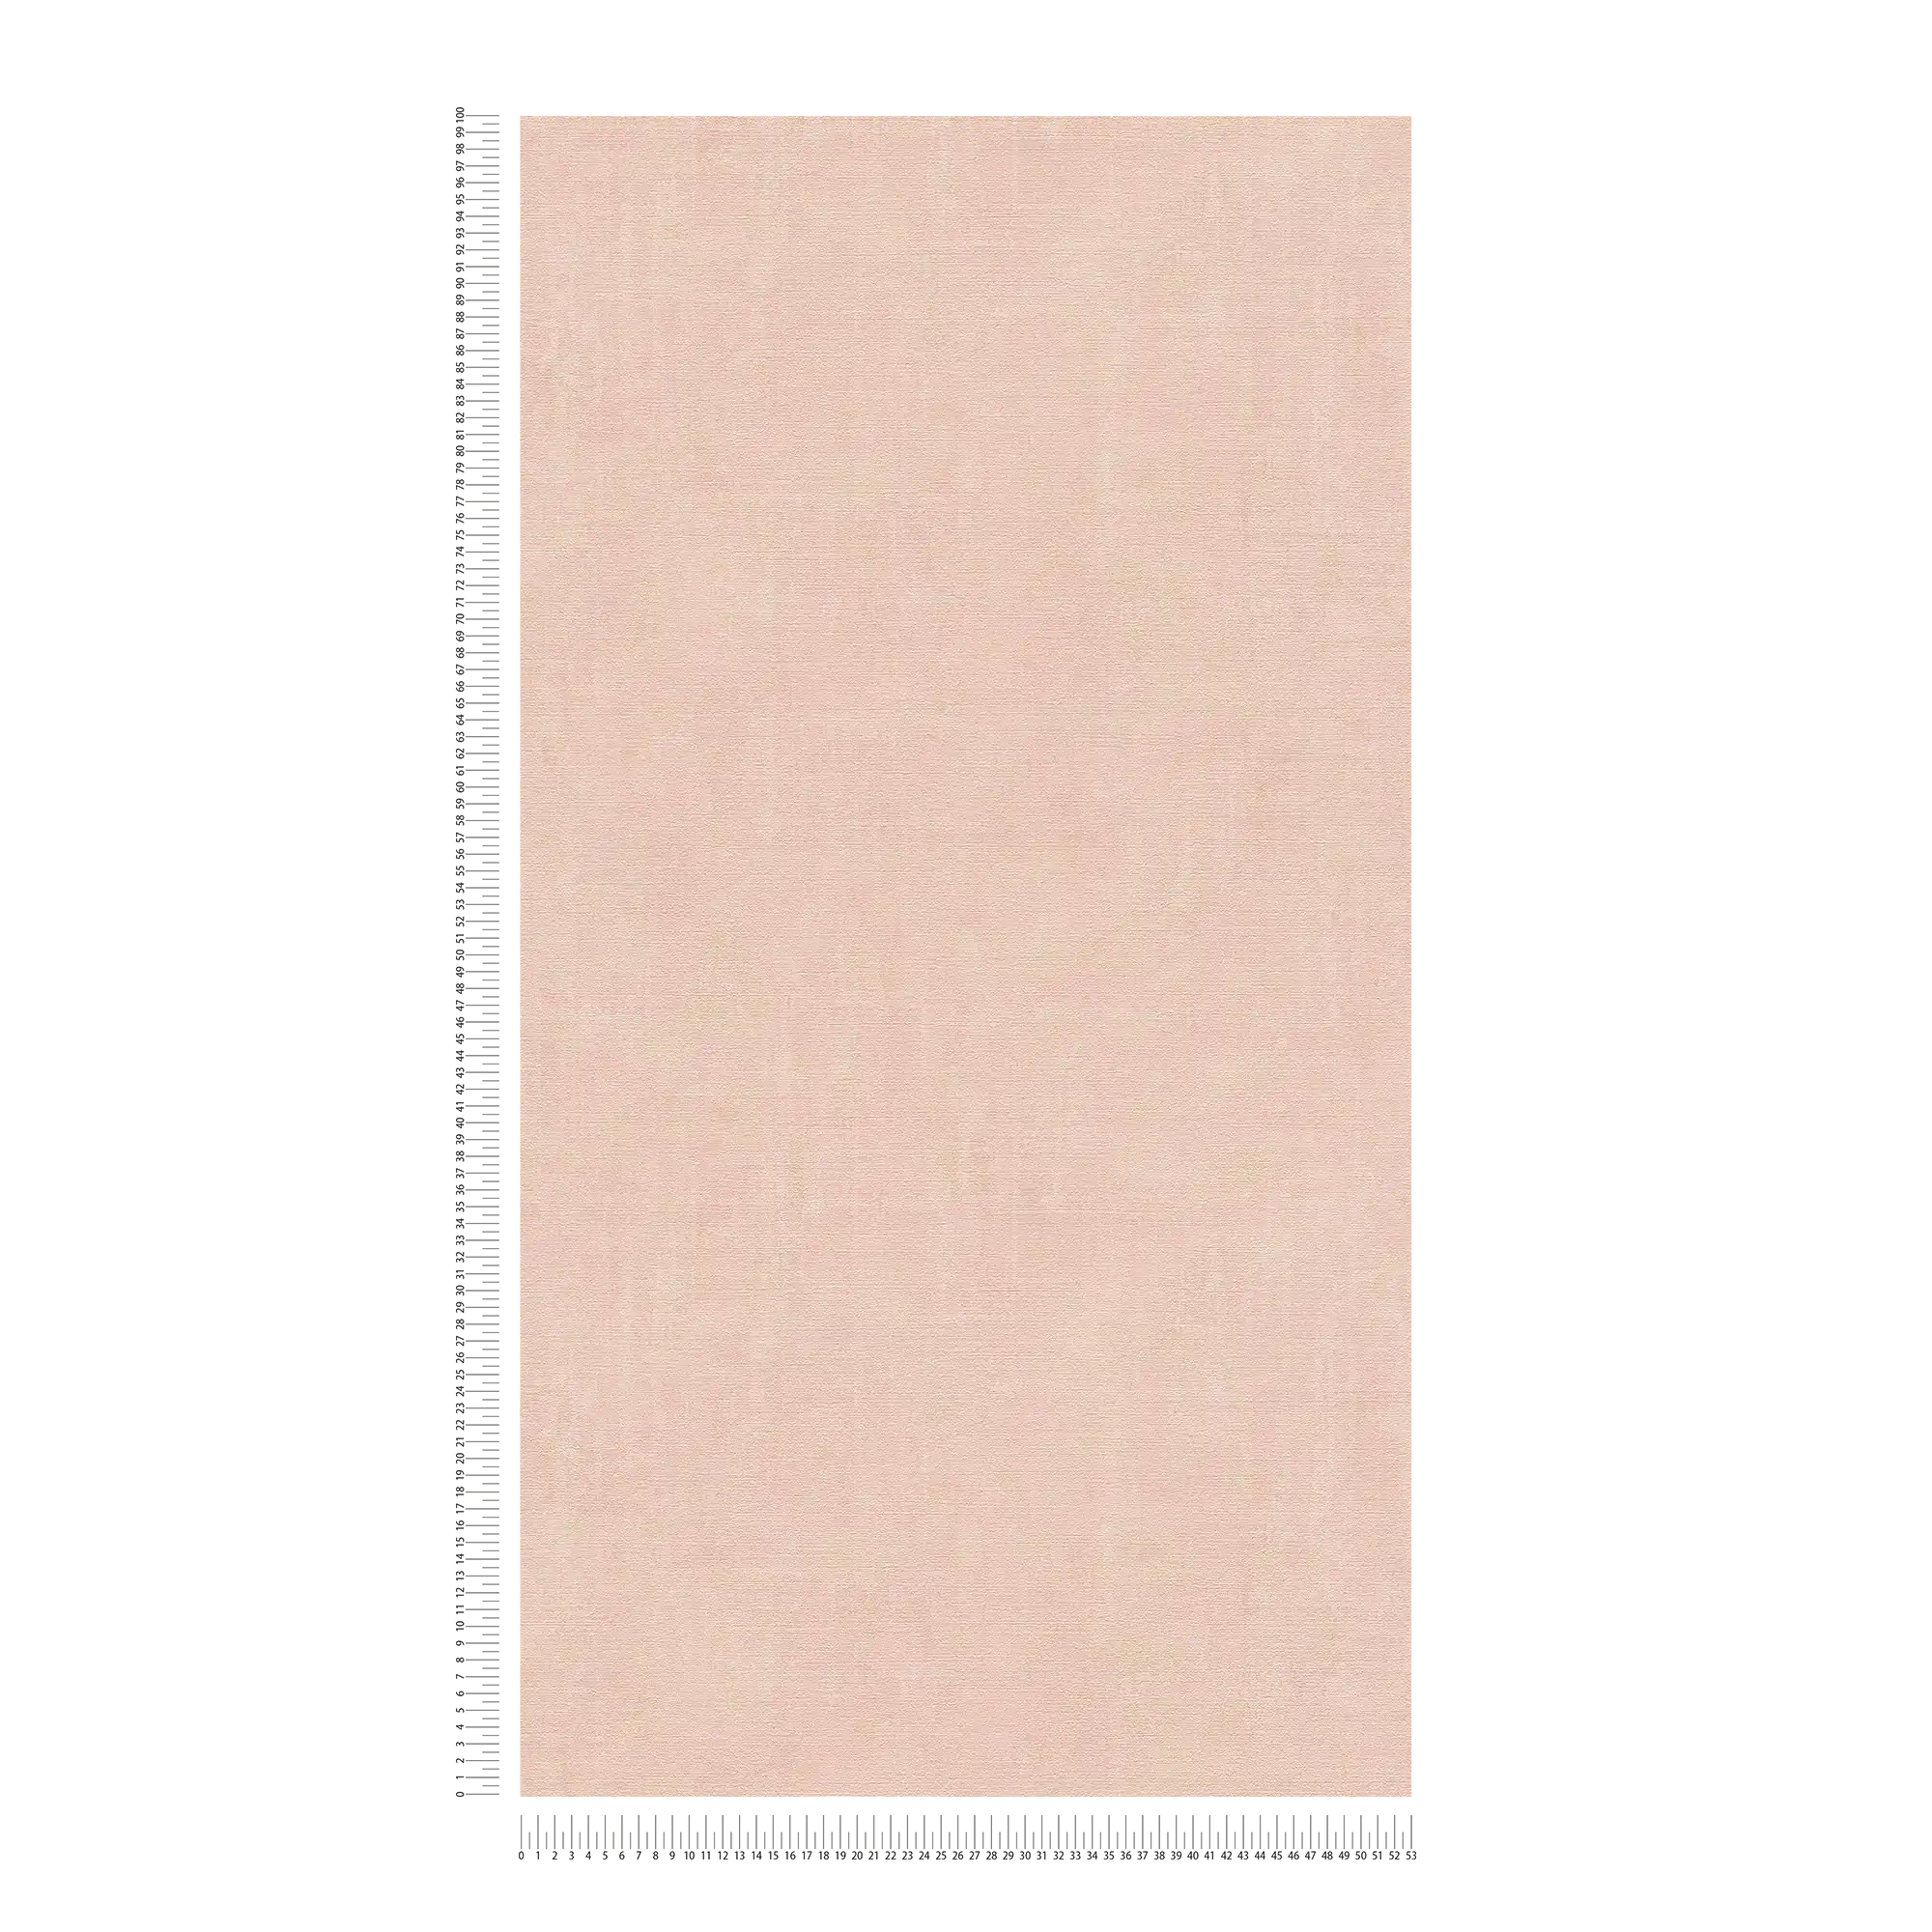             Papier peint rose Accents dorés effet chiné métallique - métallique, rose
        